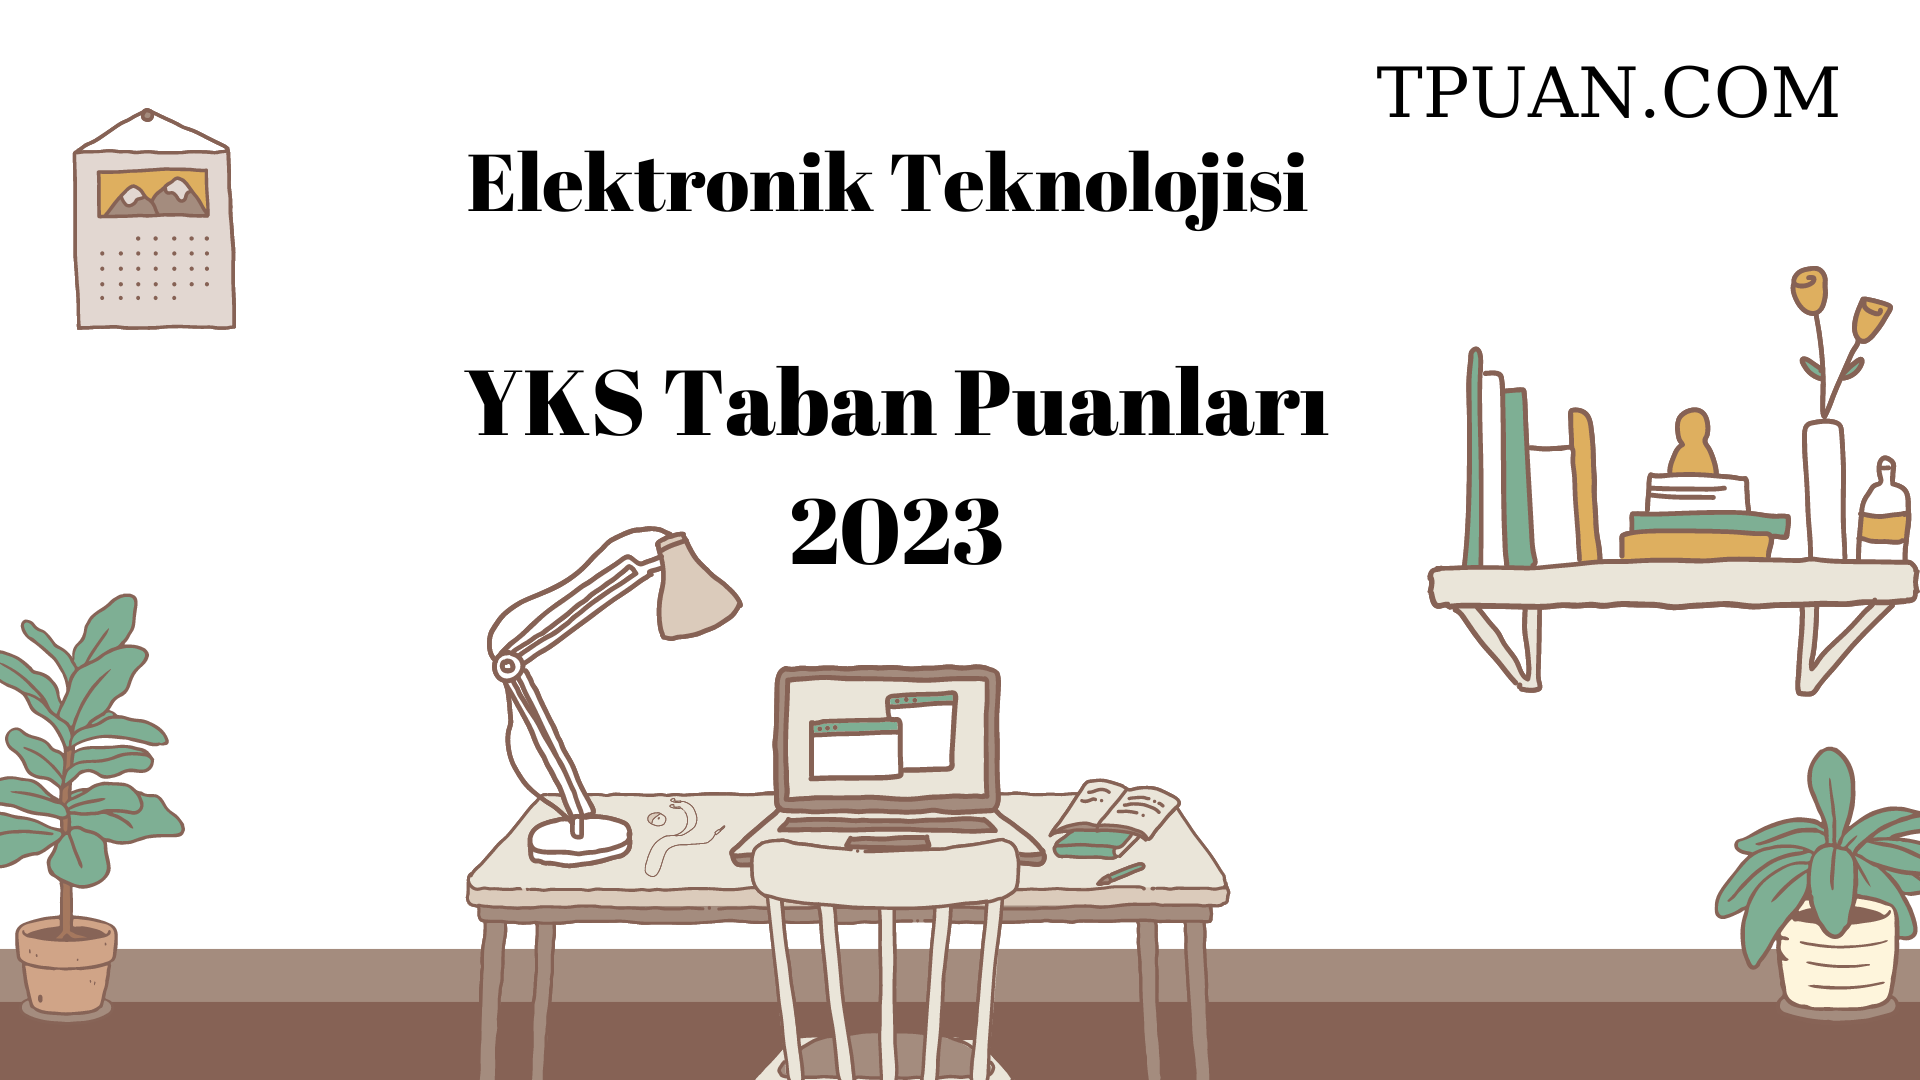  Elektronik Teknolojisi YKS Taban Puanları 2023